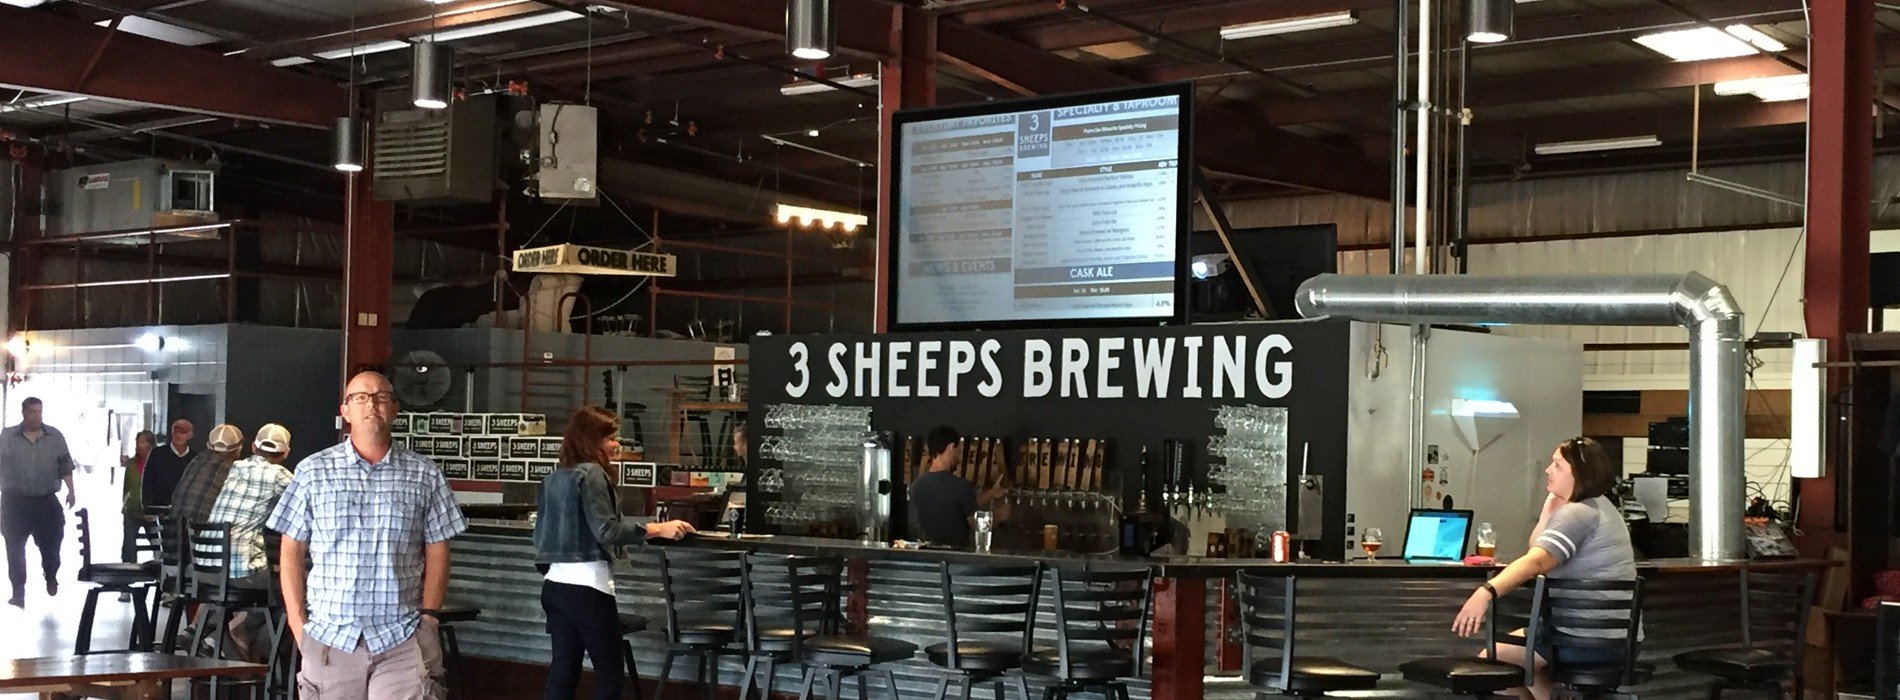 3 Sheeps Brewing Brauerei aus Vereinigte Staaten